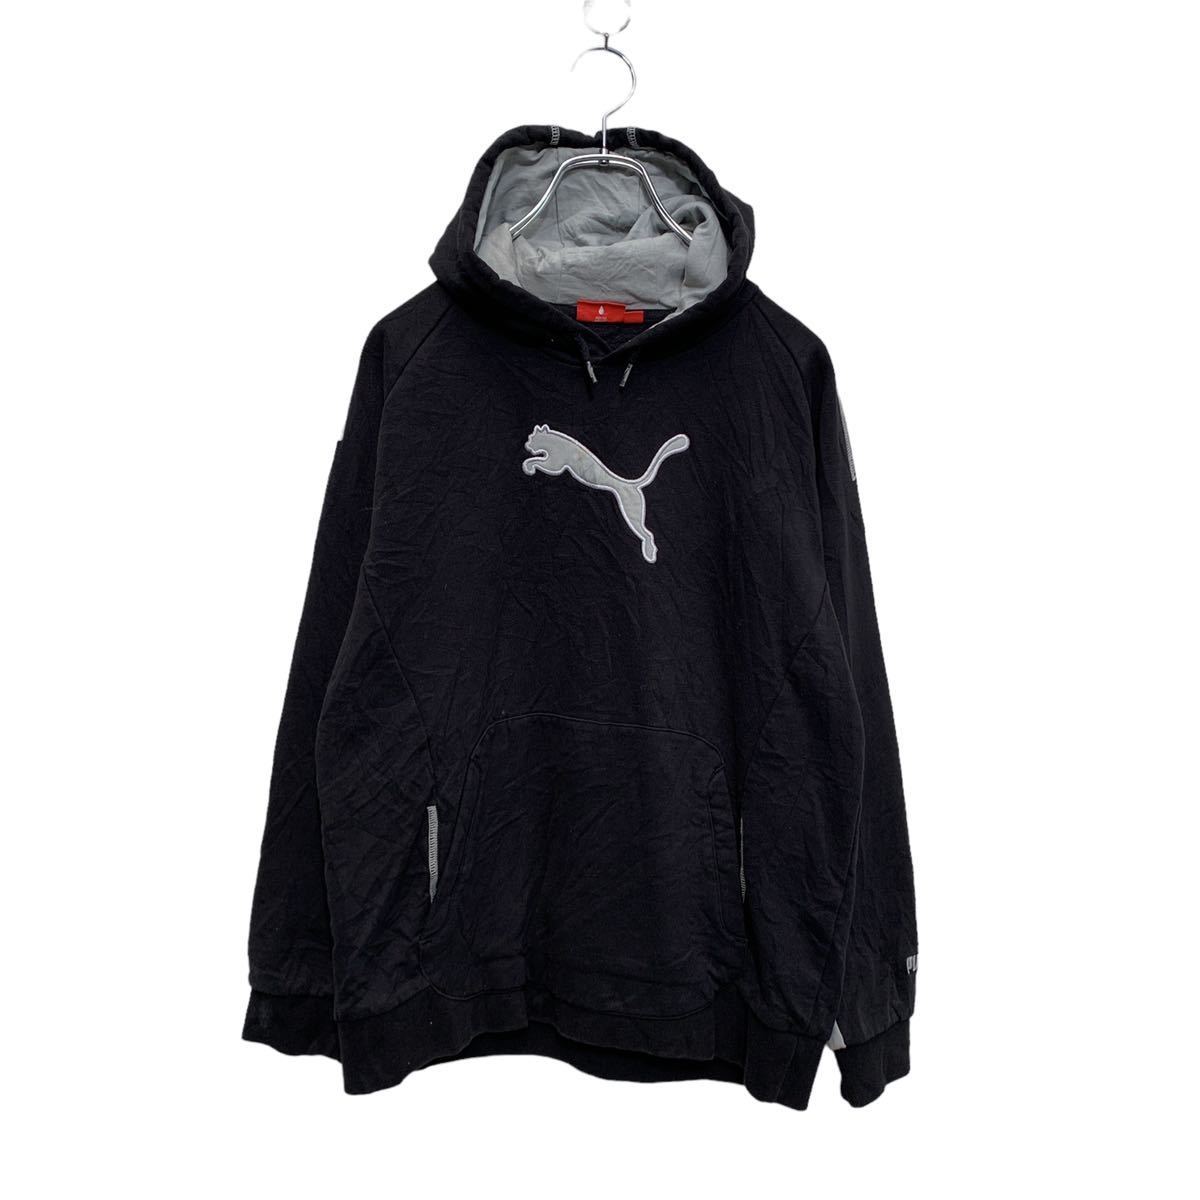 PUMA тренировочный Parker Youth размер XL 160 черный серый Puma Logo вышивка f-ti- спорт б/у одежда . America скупка a502-5791